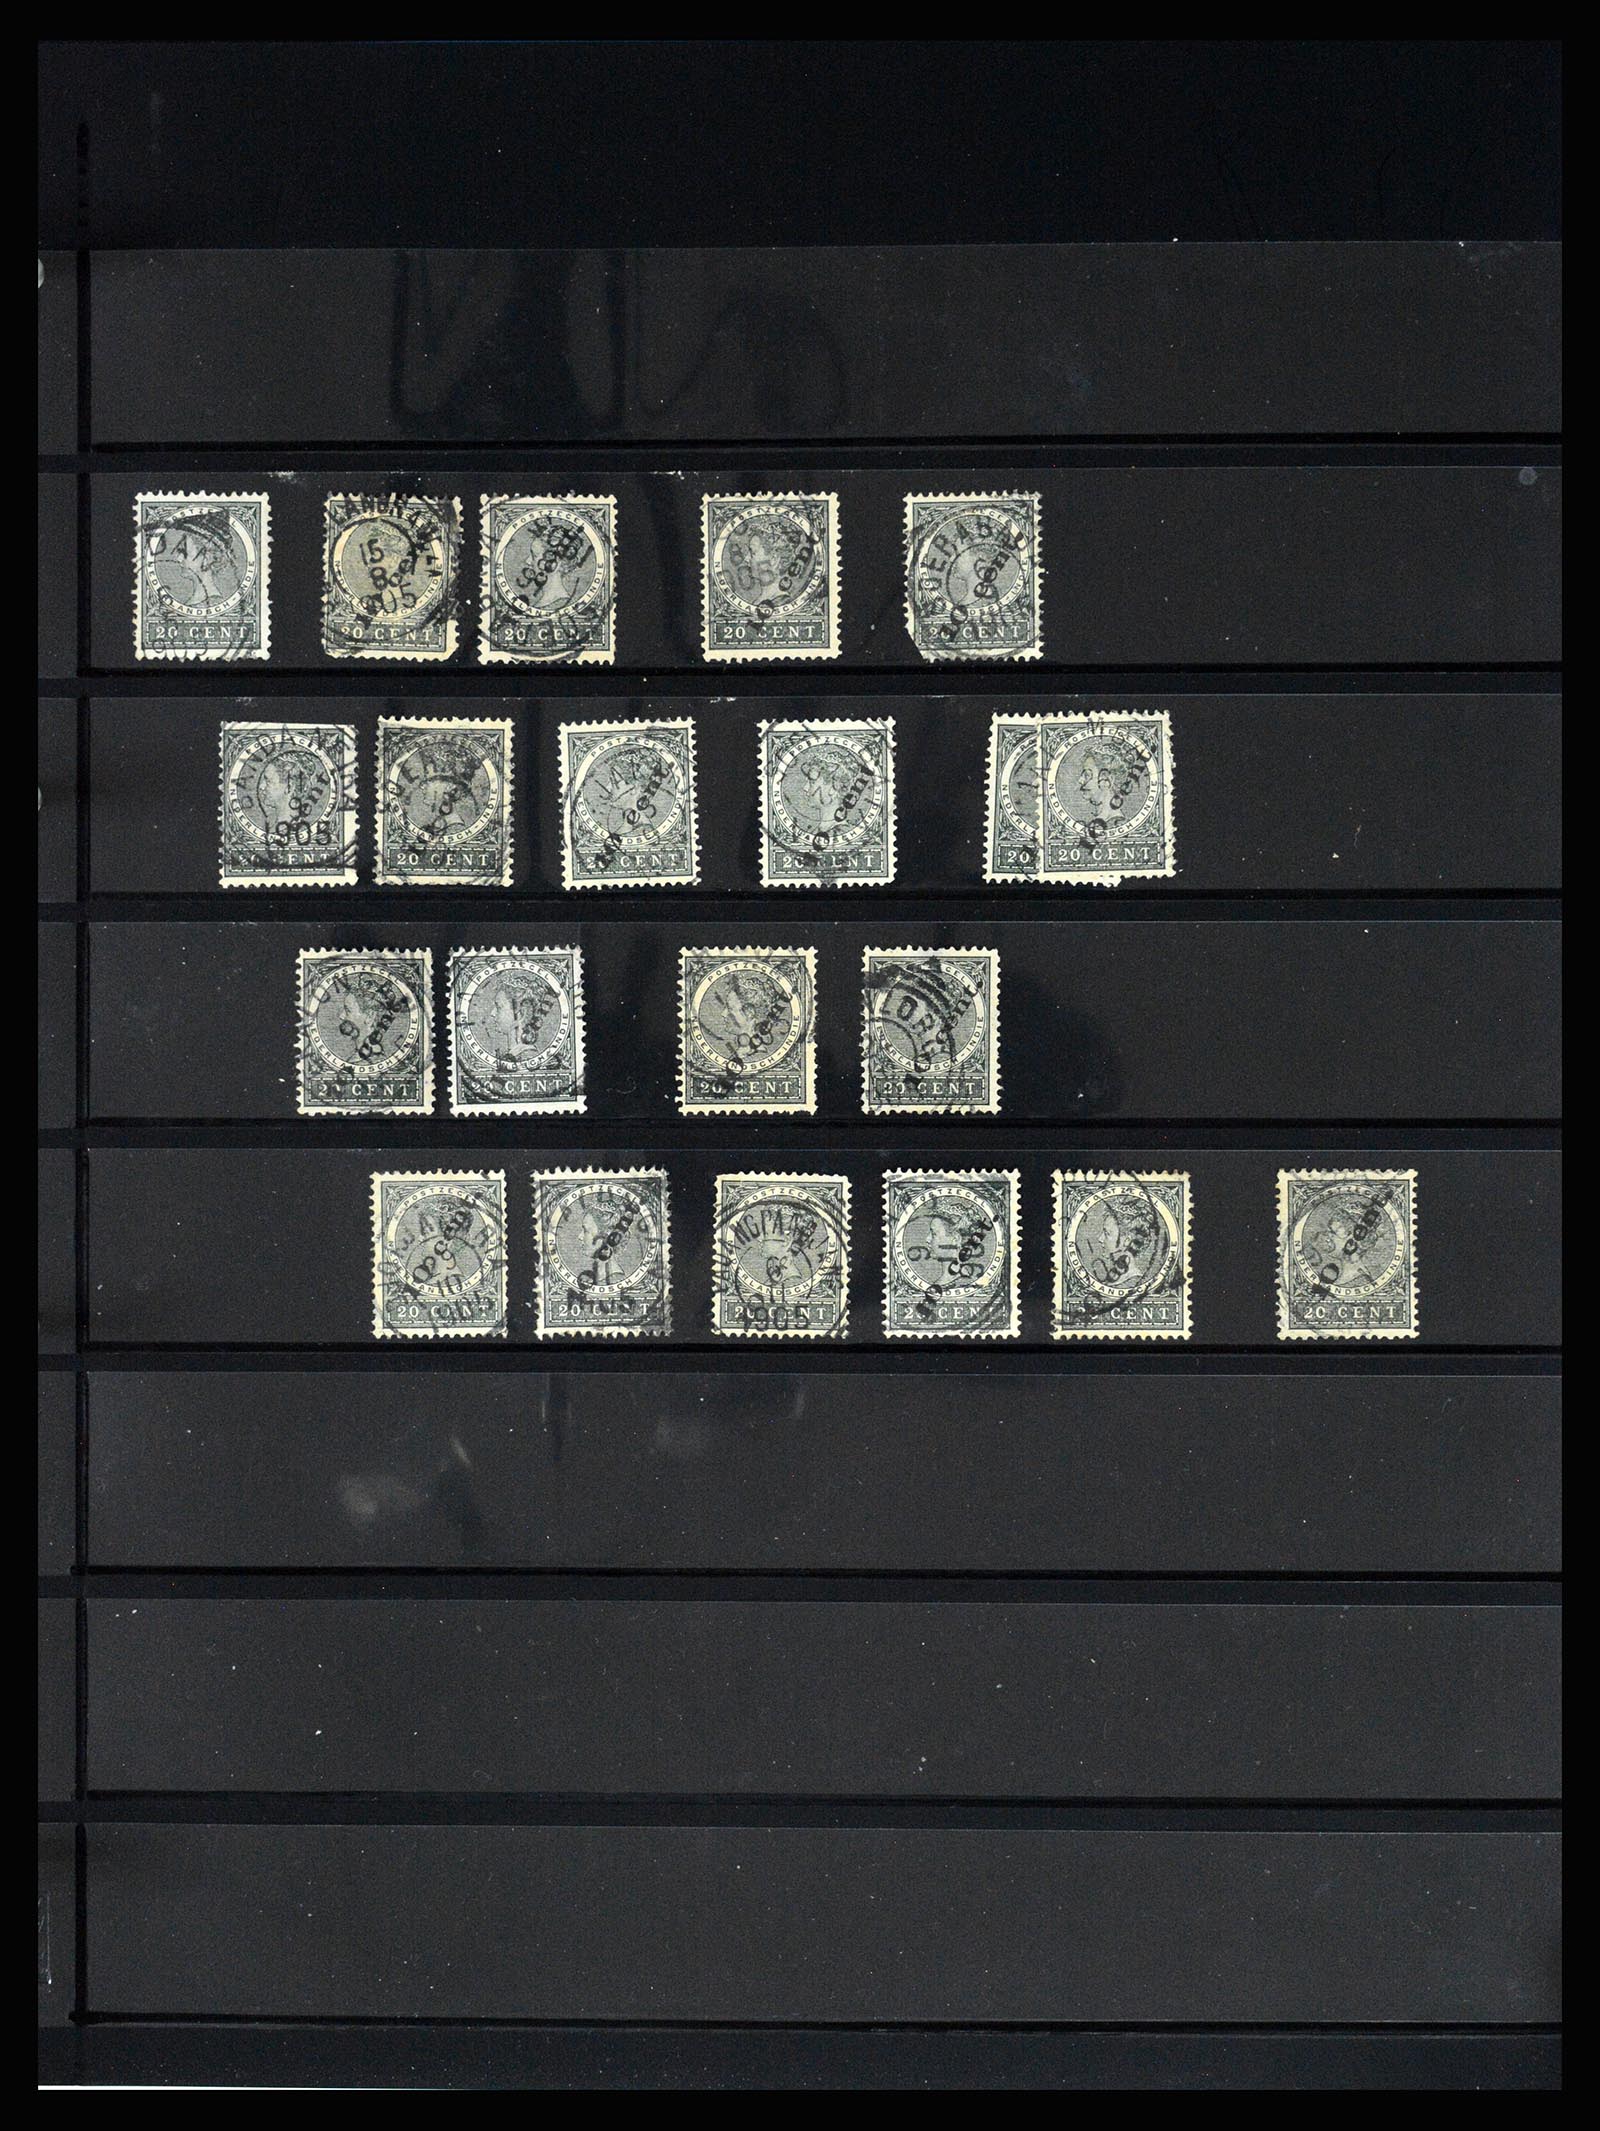 36512 165 - Stamp collection 36512 Nederlands Indië stempels 1872-1930.